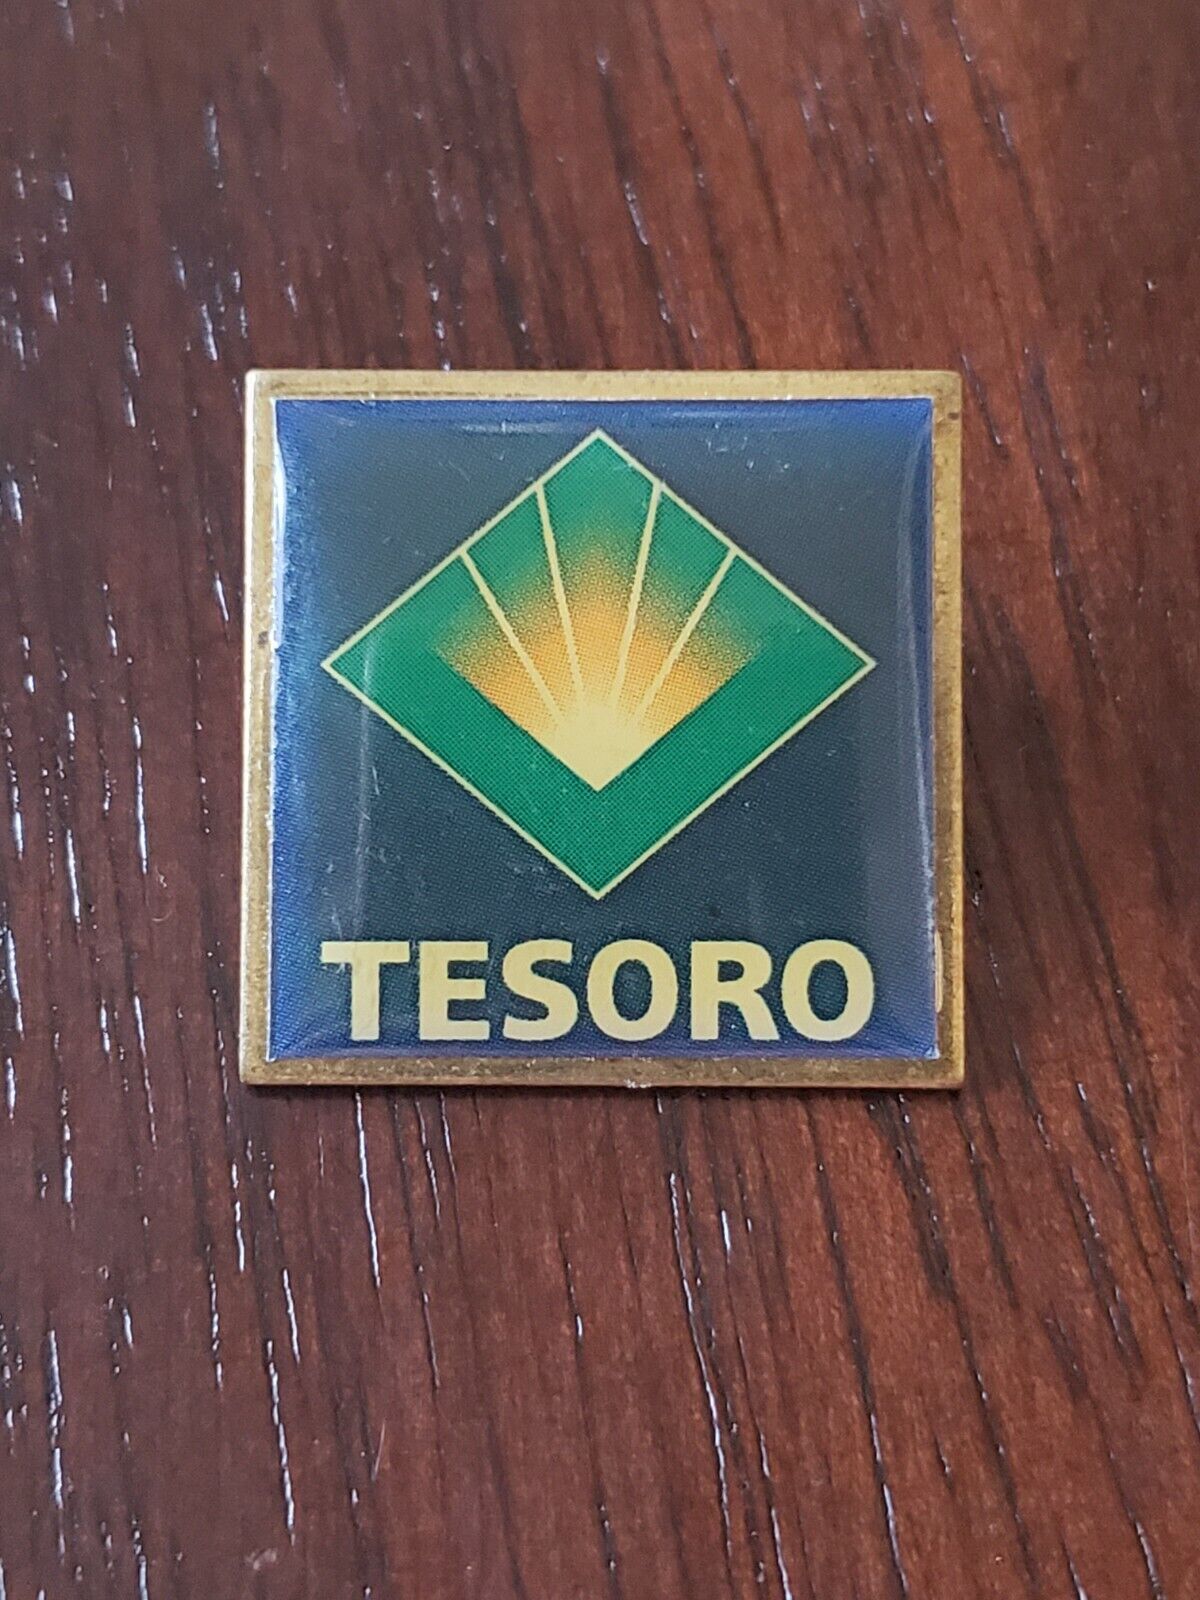 Defunct Tesoro Petroleum Company Lapel Pin